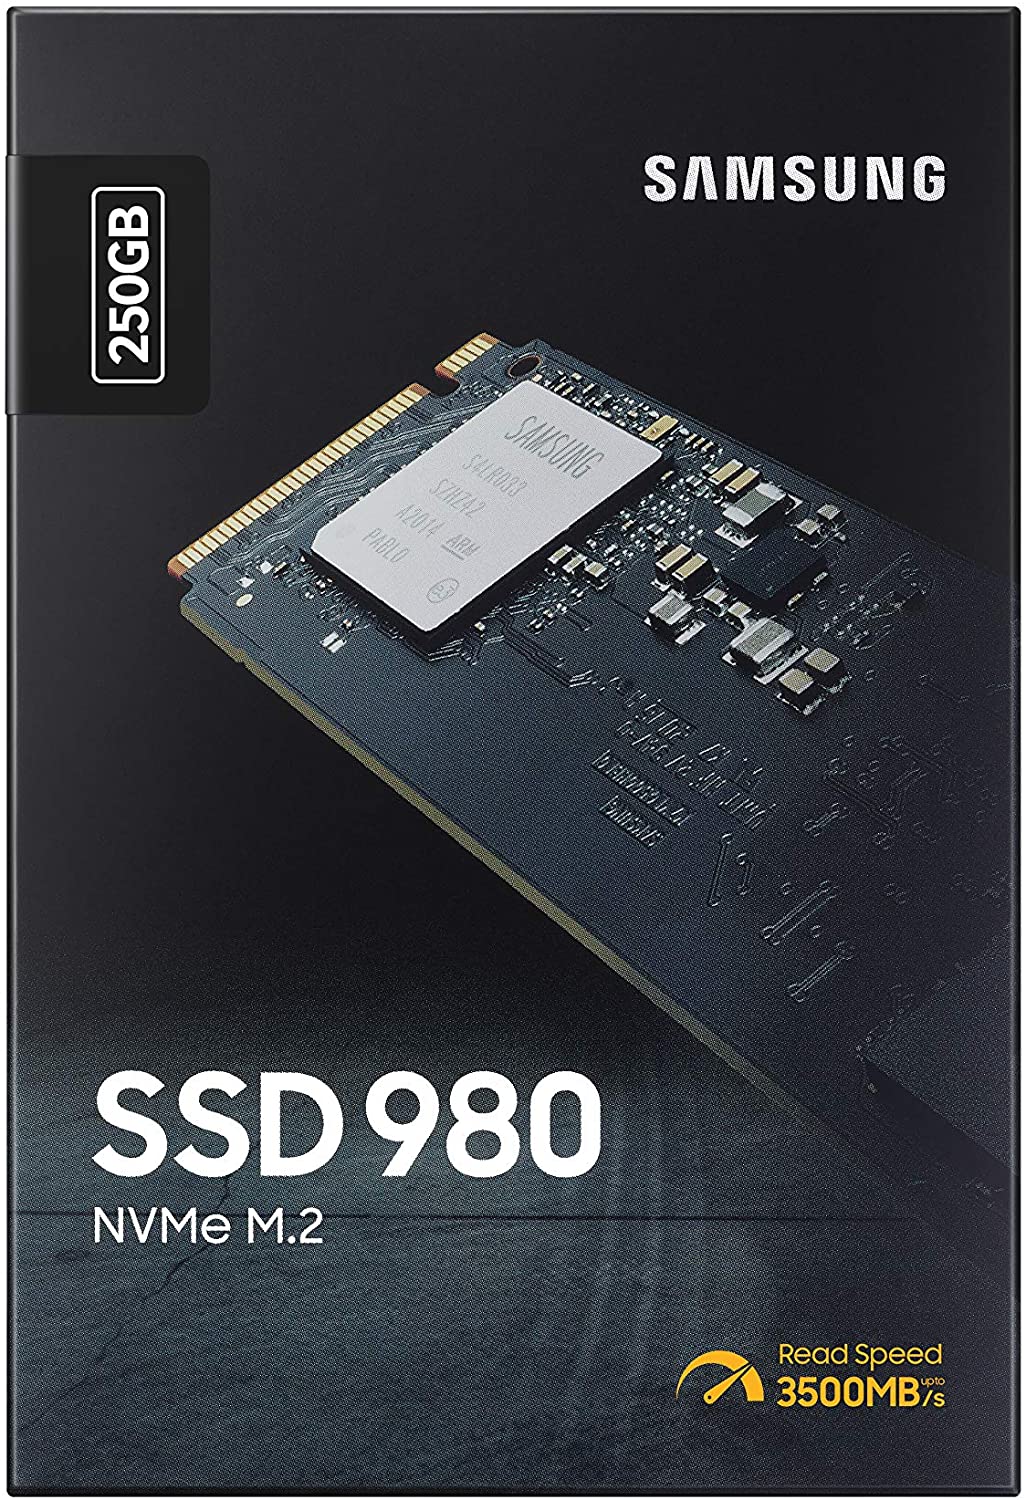 Urskive pessimist Bevæger sig ikke Samsung 980 M.2 NVMe SSD 250 GB